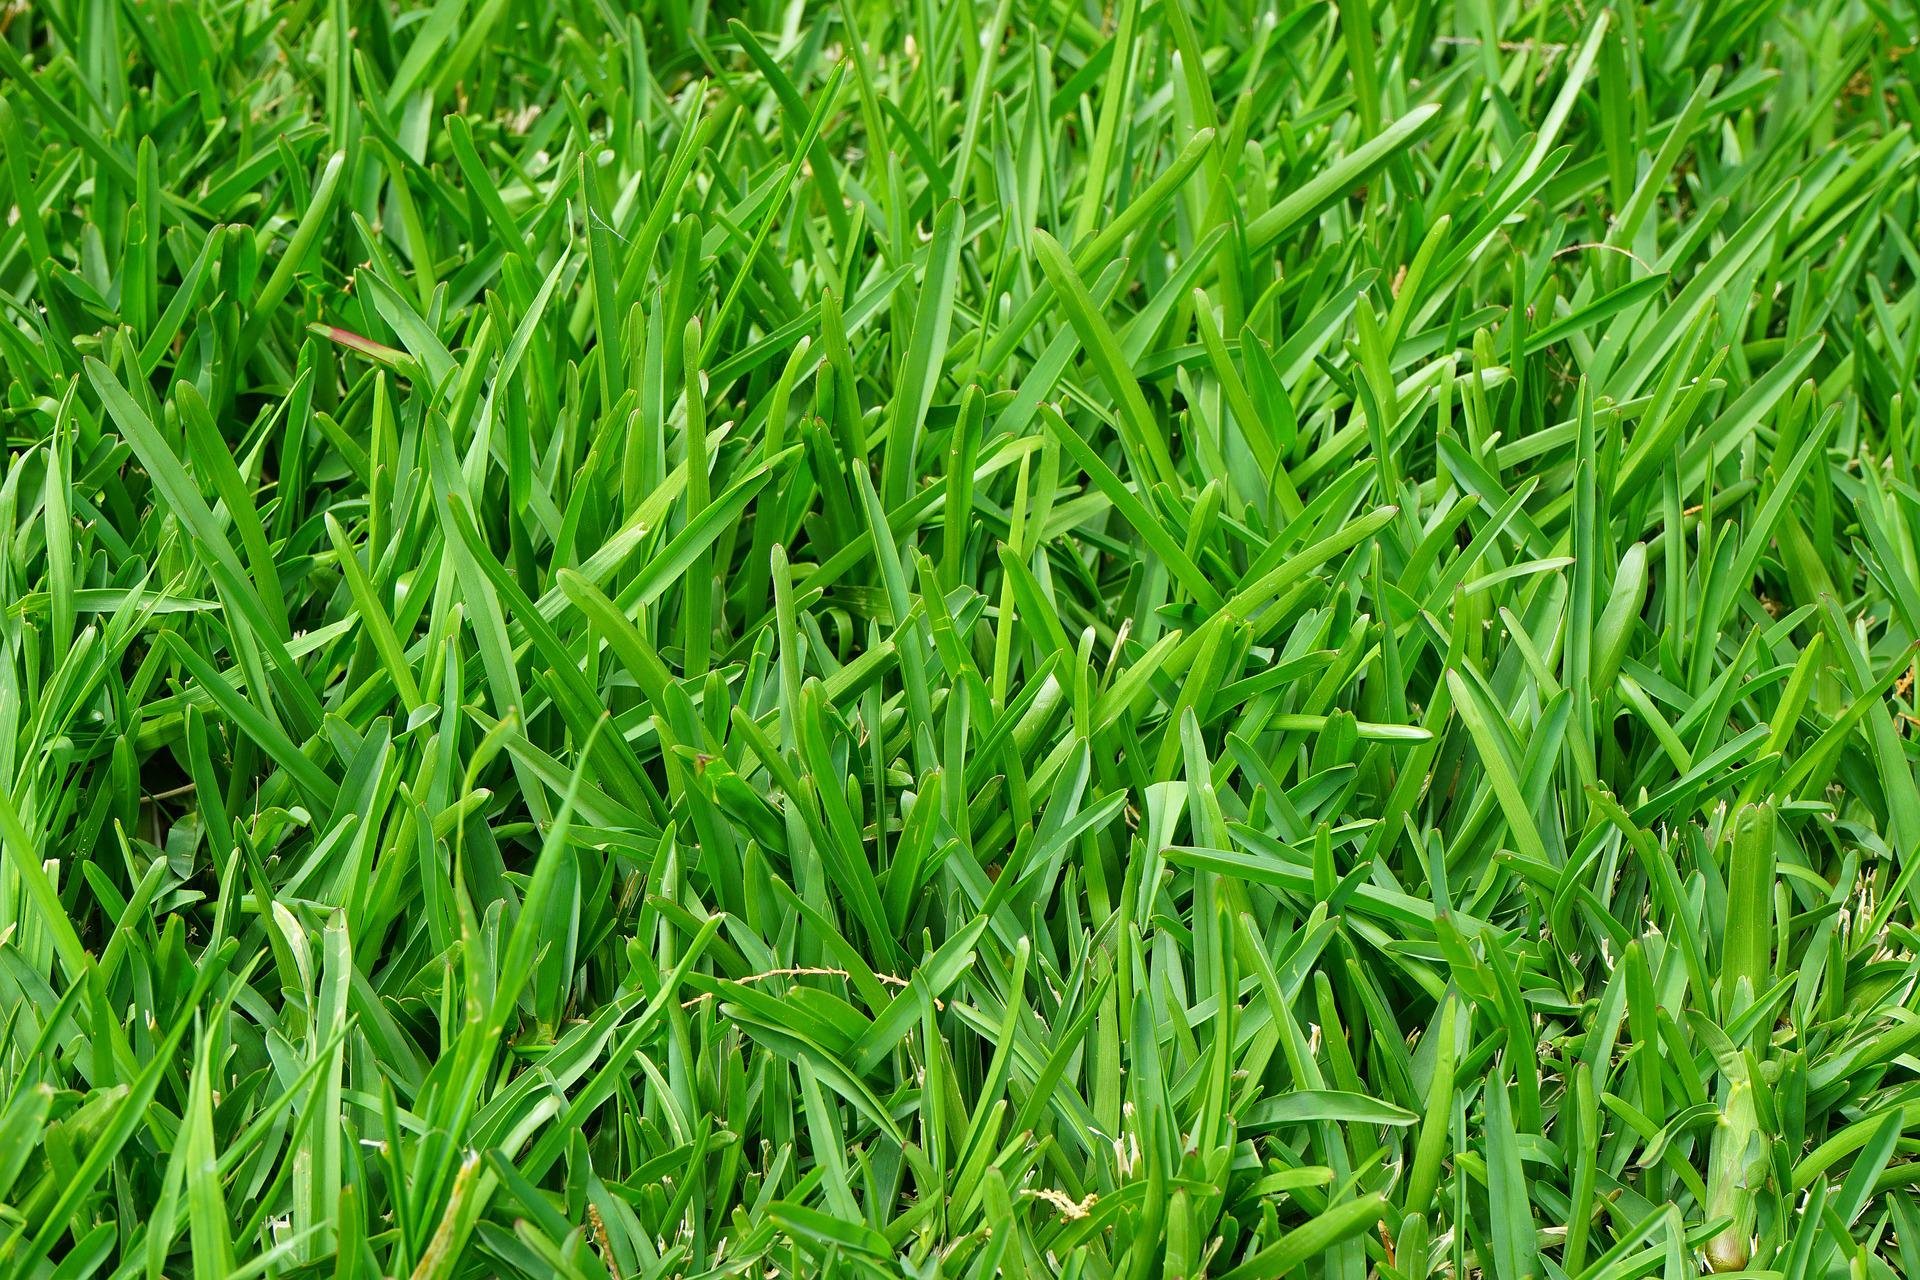 grass-gf43647d29_1920.jpg